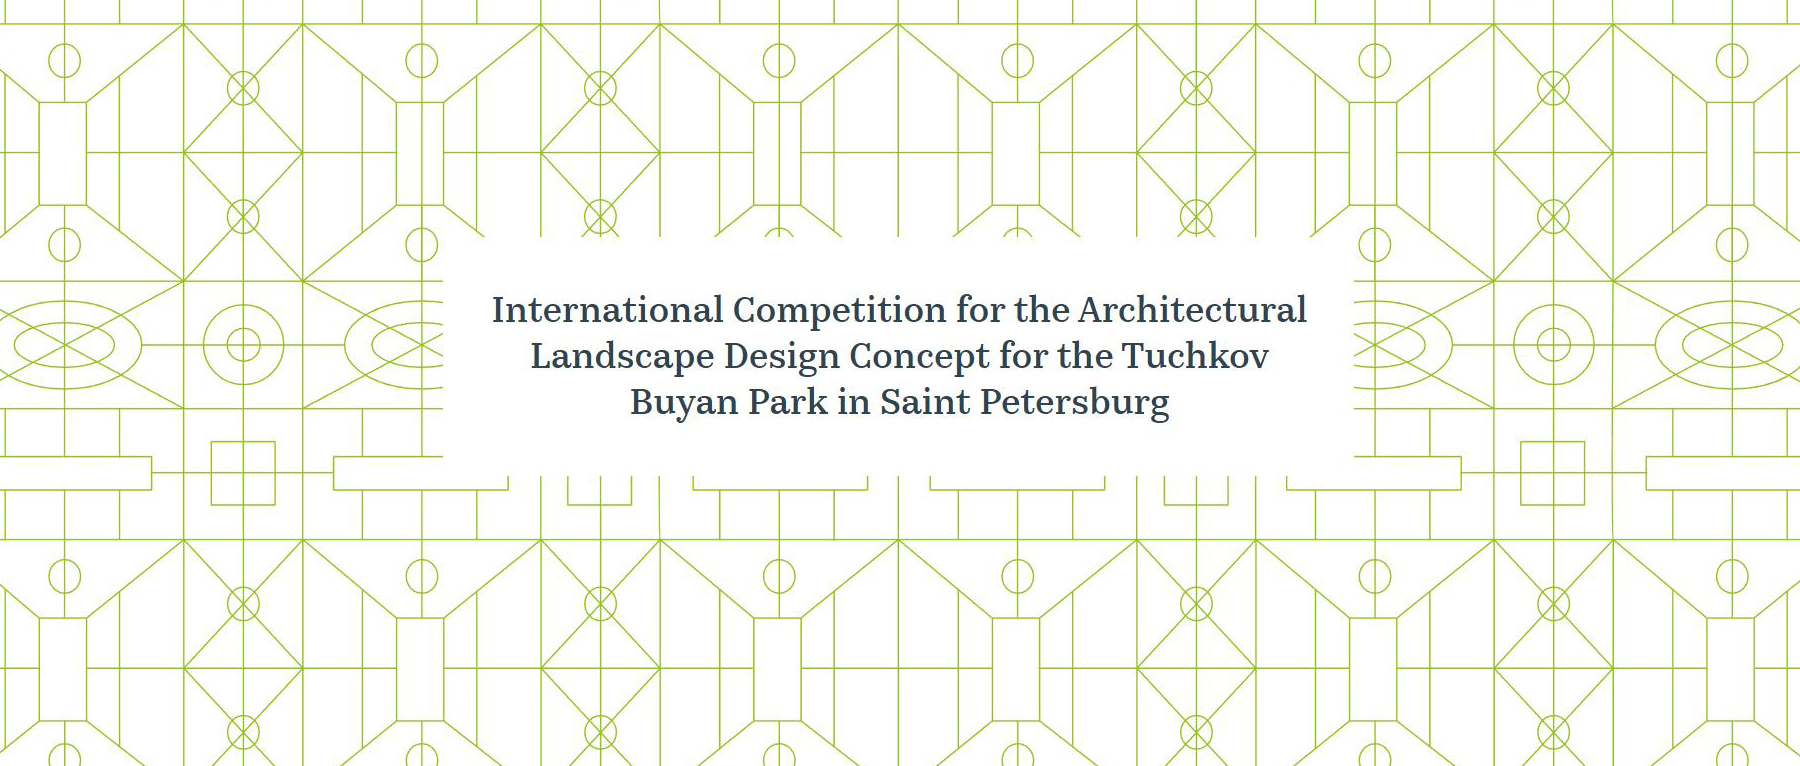 圣彼得堡图奇科夫布雅公园建筑景观概念设计国际竞赛